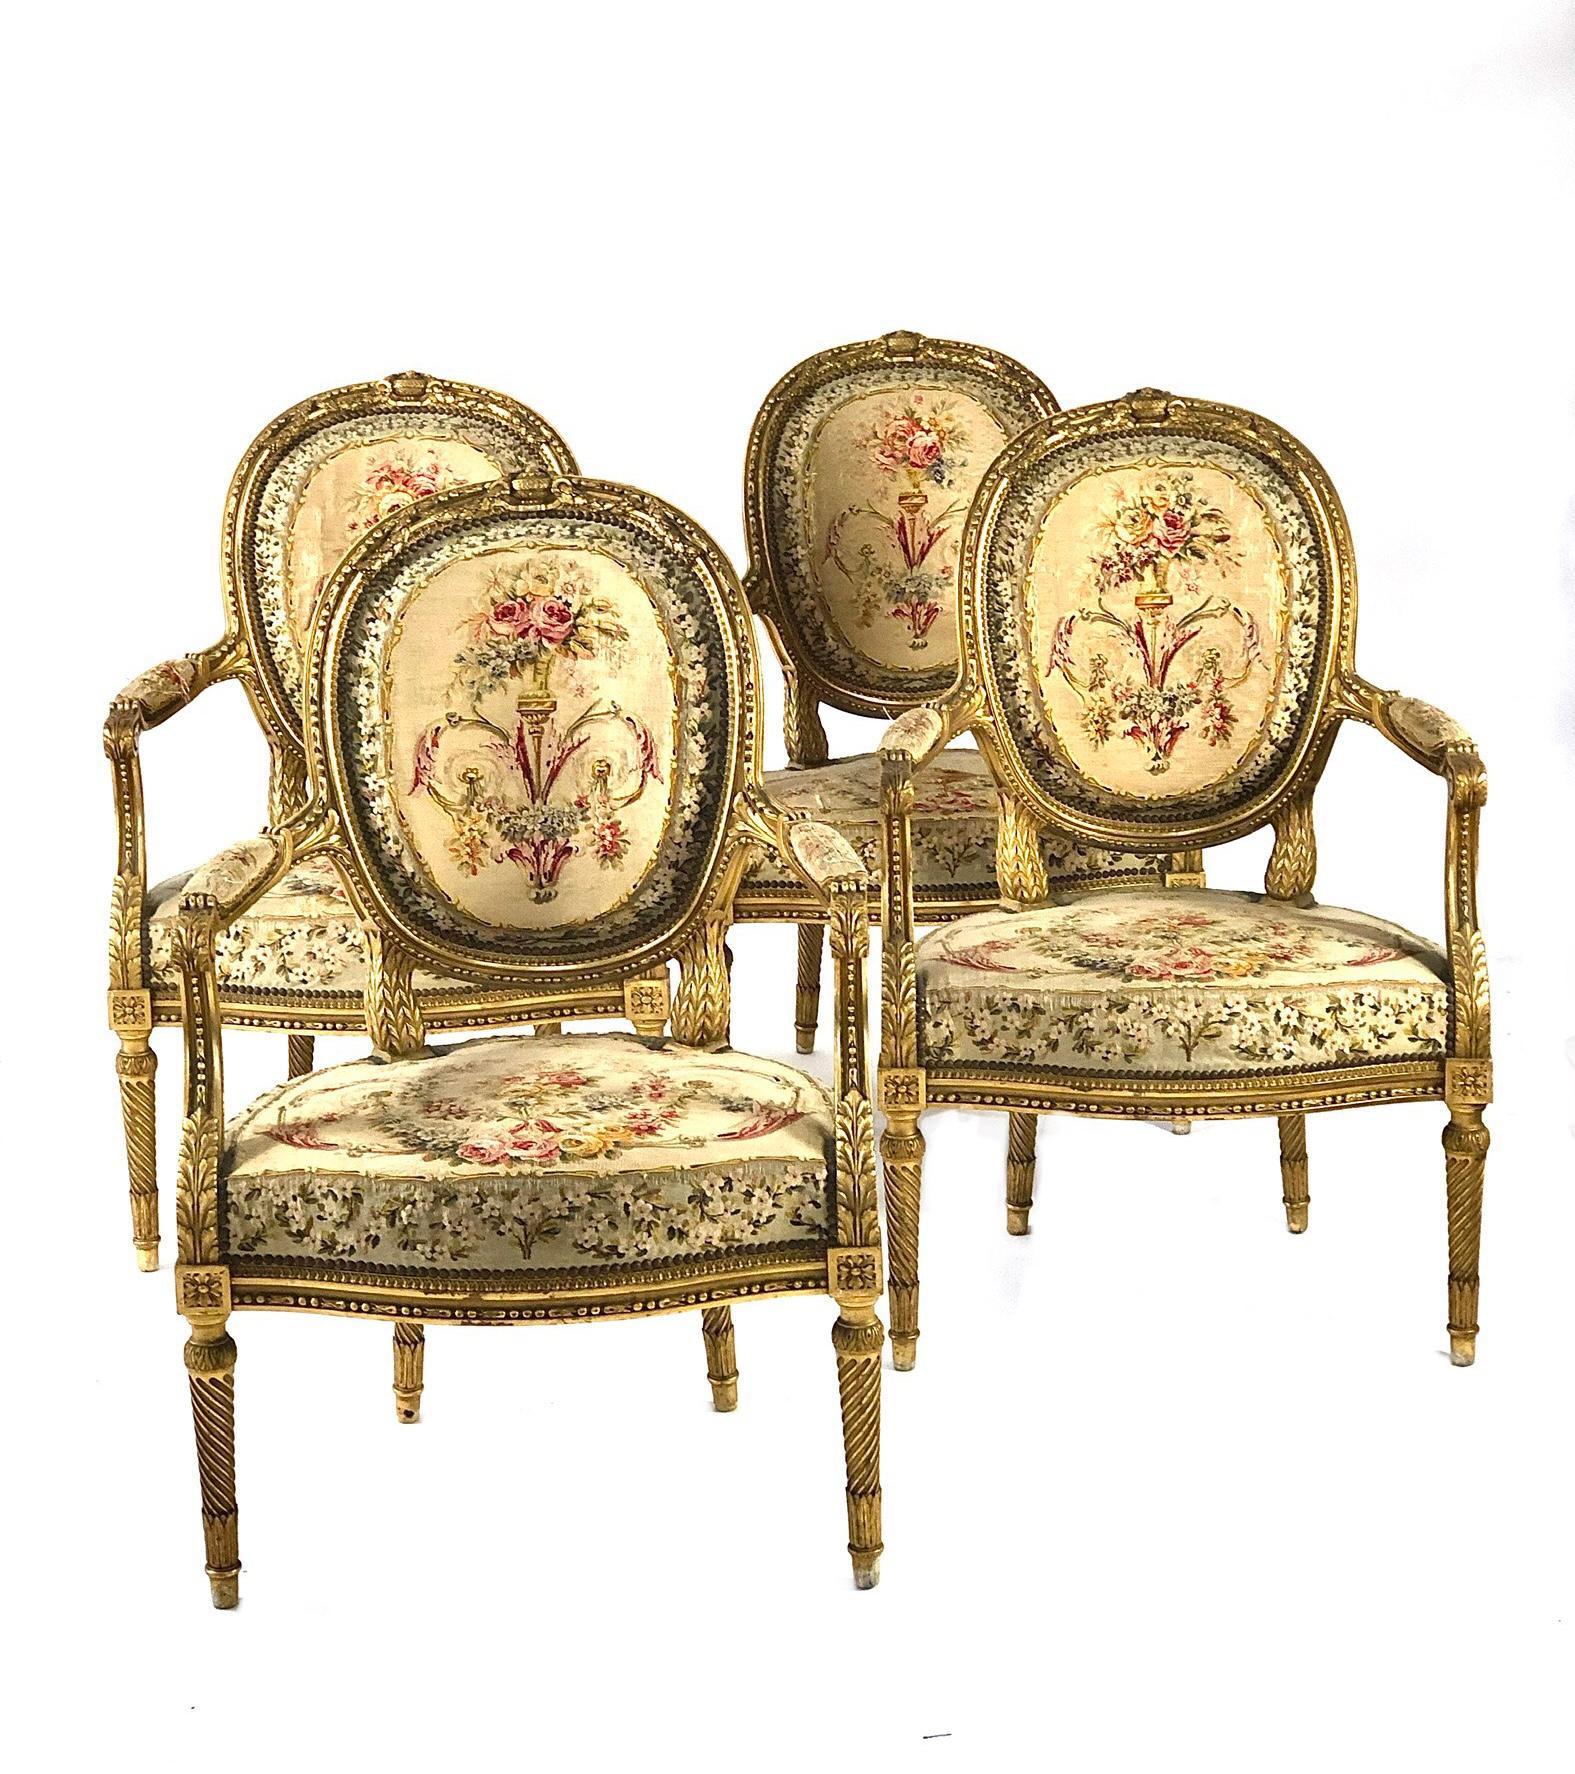 Ensemble exquis de meubles de salon en bois doré de style Louis XVI, comprenant un canapé à deux places et quatre fauteuils assortis. Elegamment sculpté et tapissé, ce bel ensemble présente des motifs richement sculptés, ainsi qu'une tapisserie